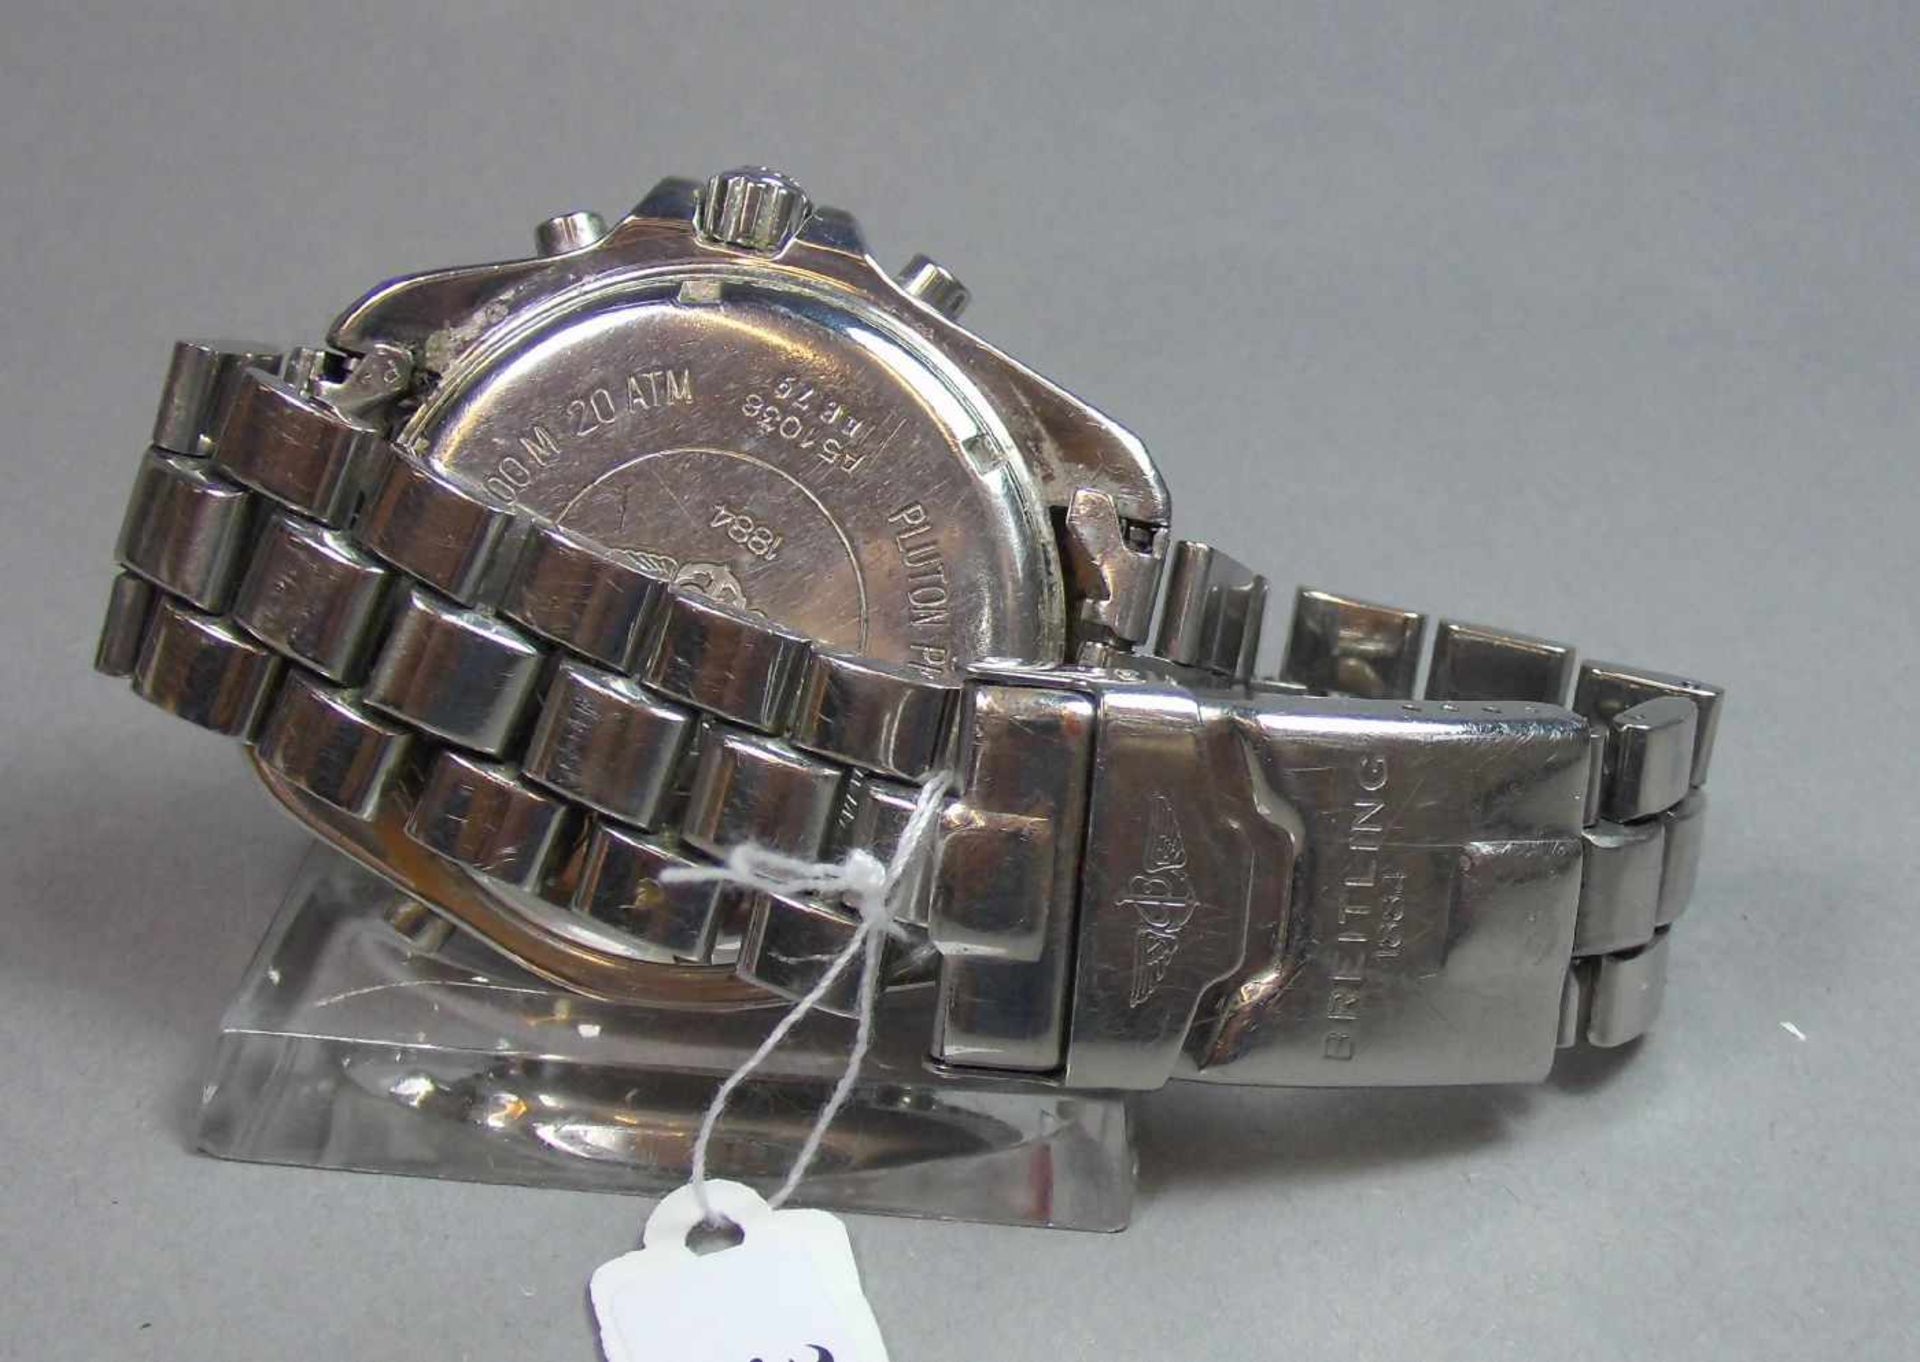 BREITLING "PLUTON" ARMBANDUHR / wristwatch, Quarz-Uhr, Schweiz. Stahlgehäuse mit drehbarer - Bild 8 aus 9